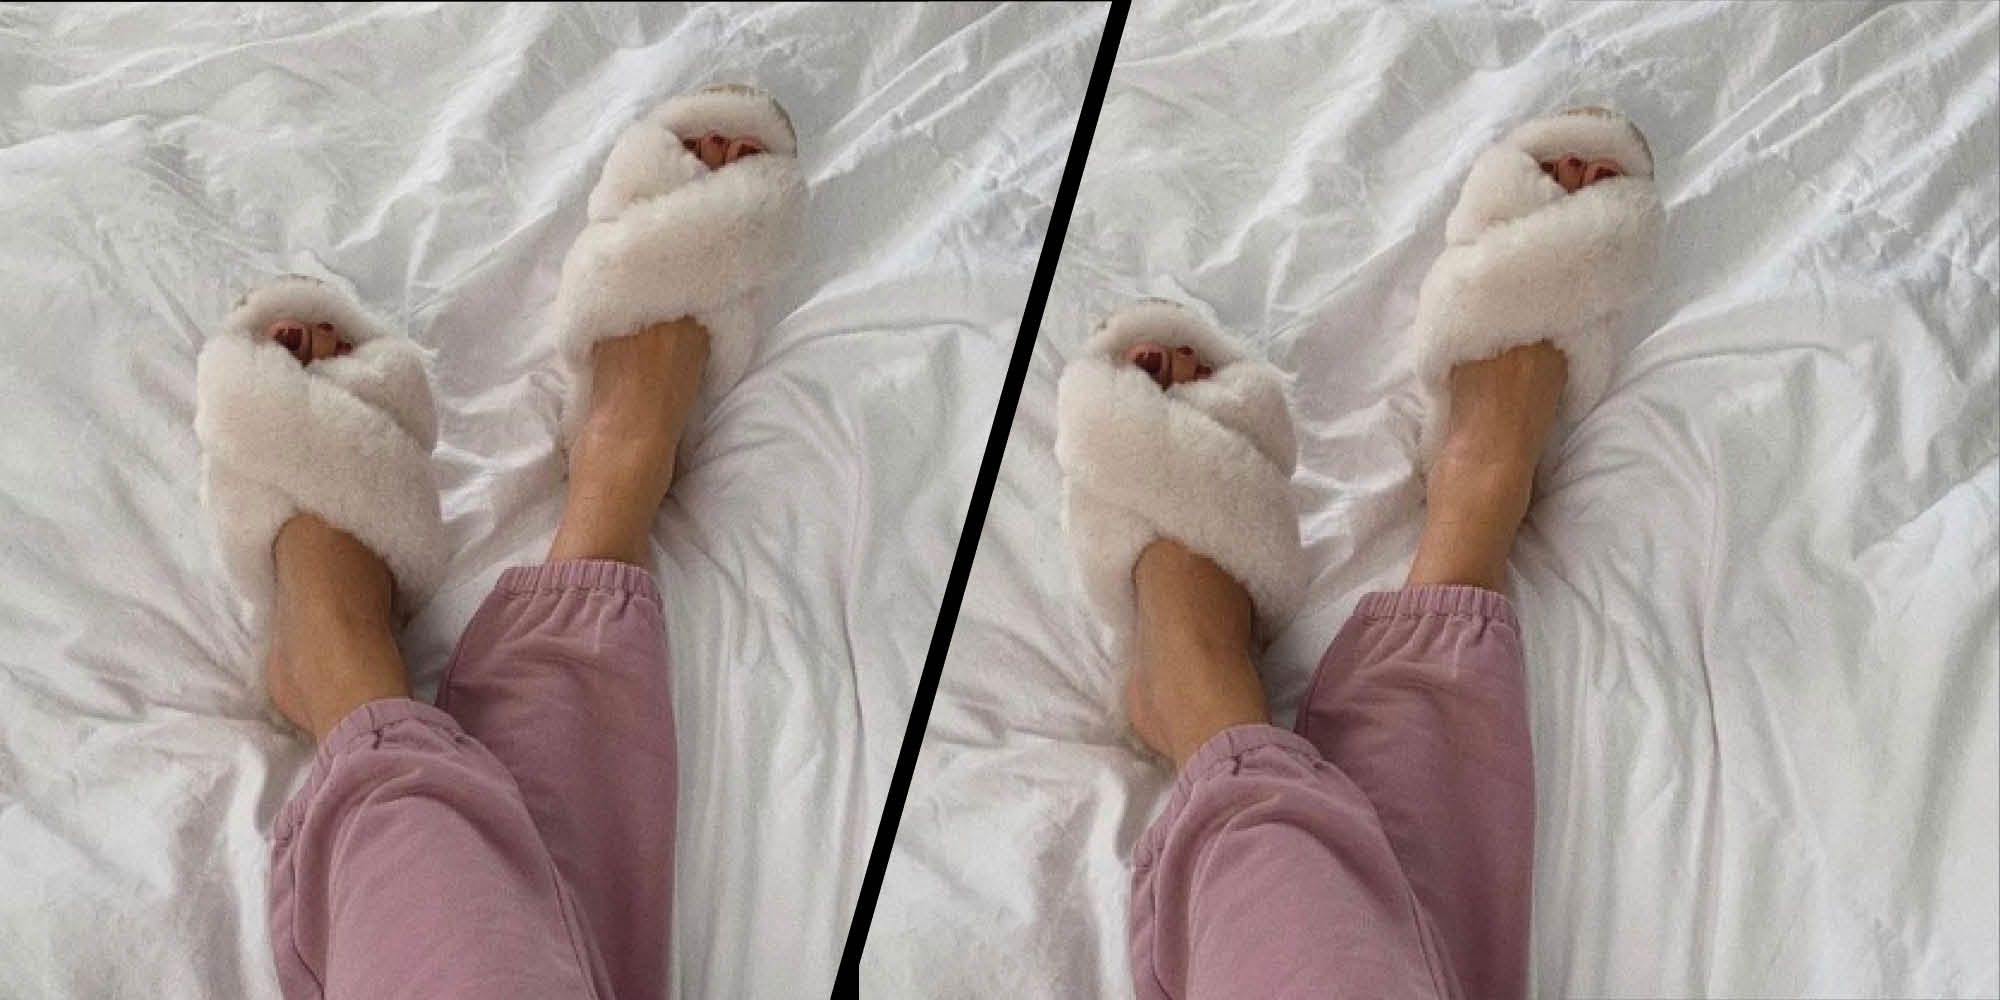 fluffy slippers for women